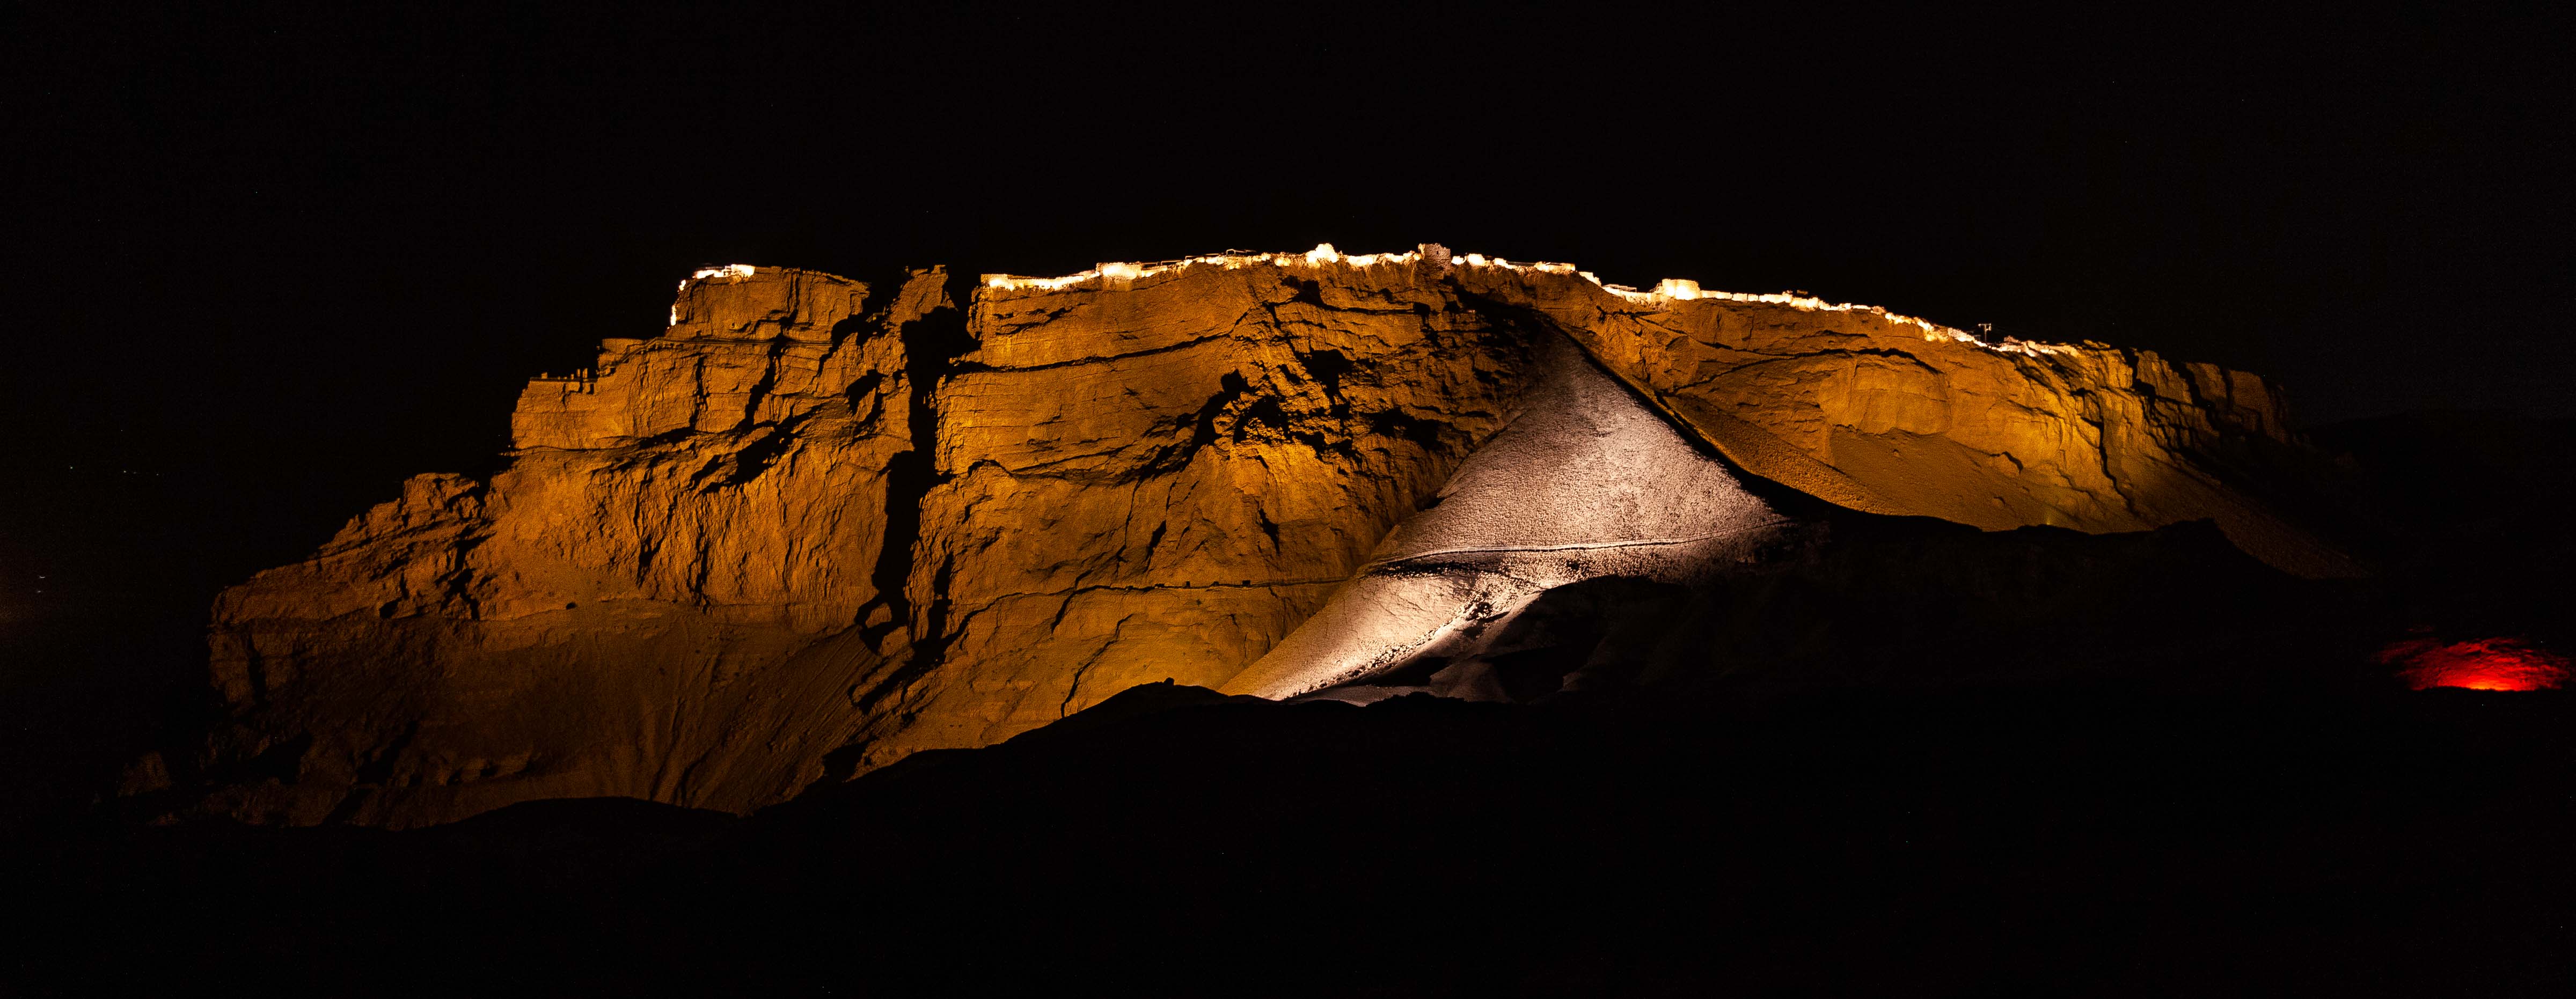 Israel, Southern Prov, Masada At Night, 2012, IMG 6415